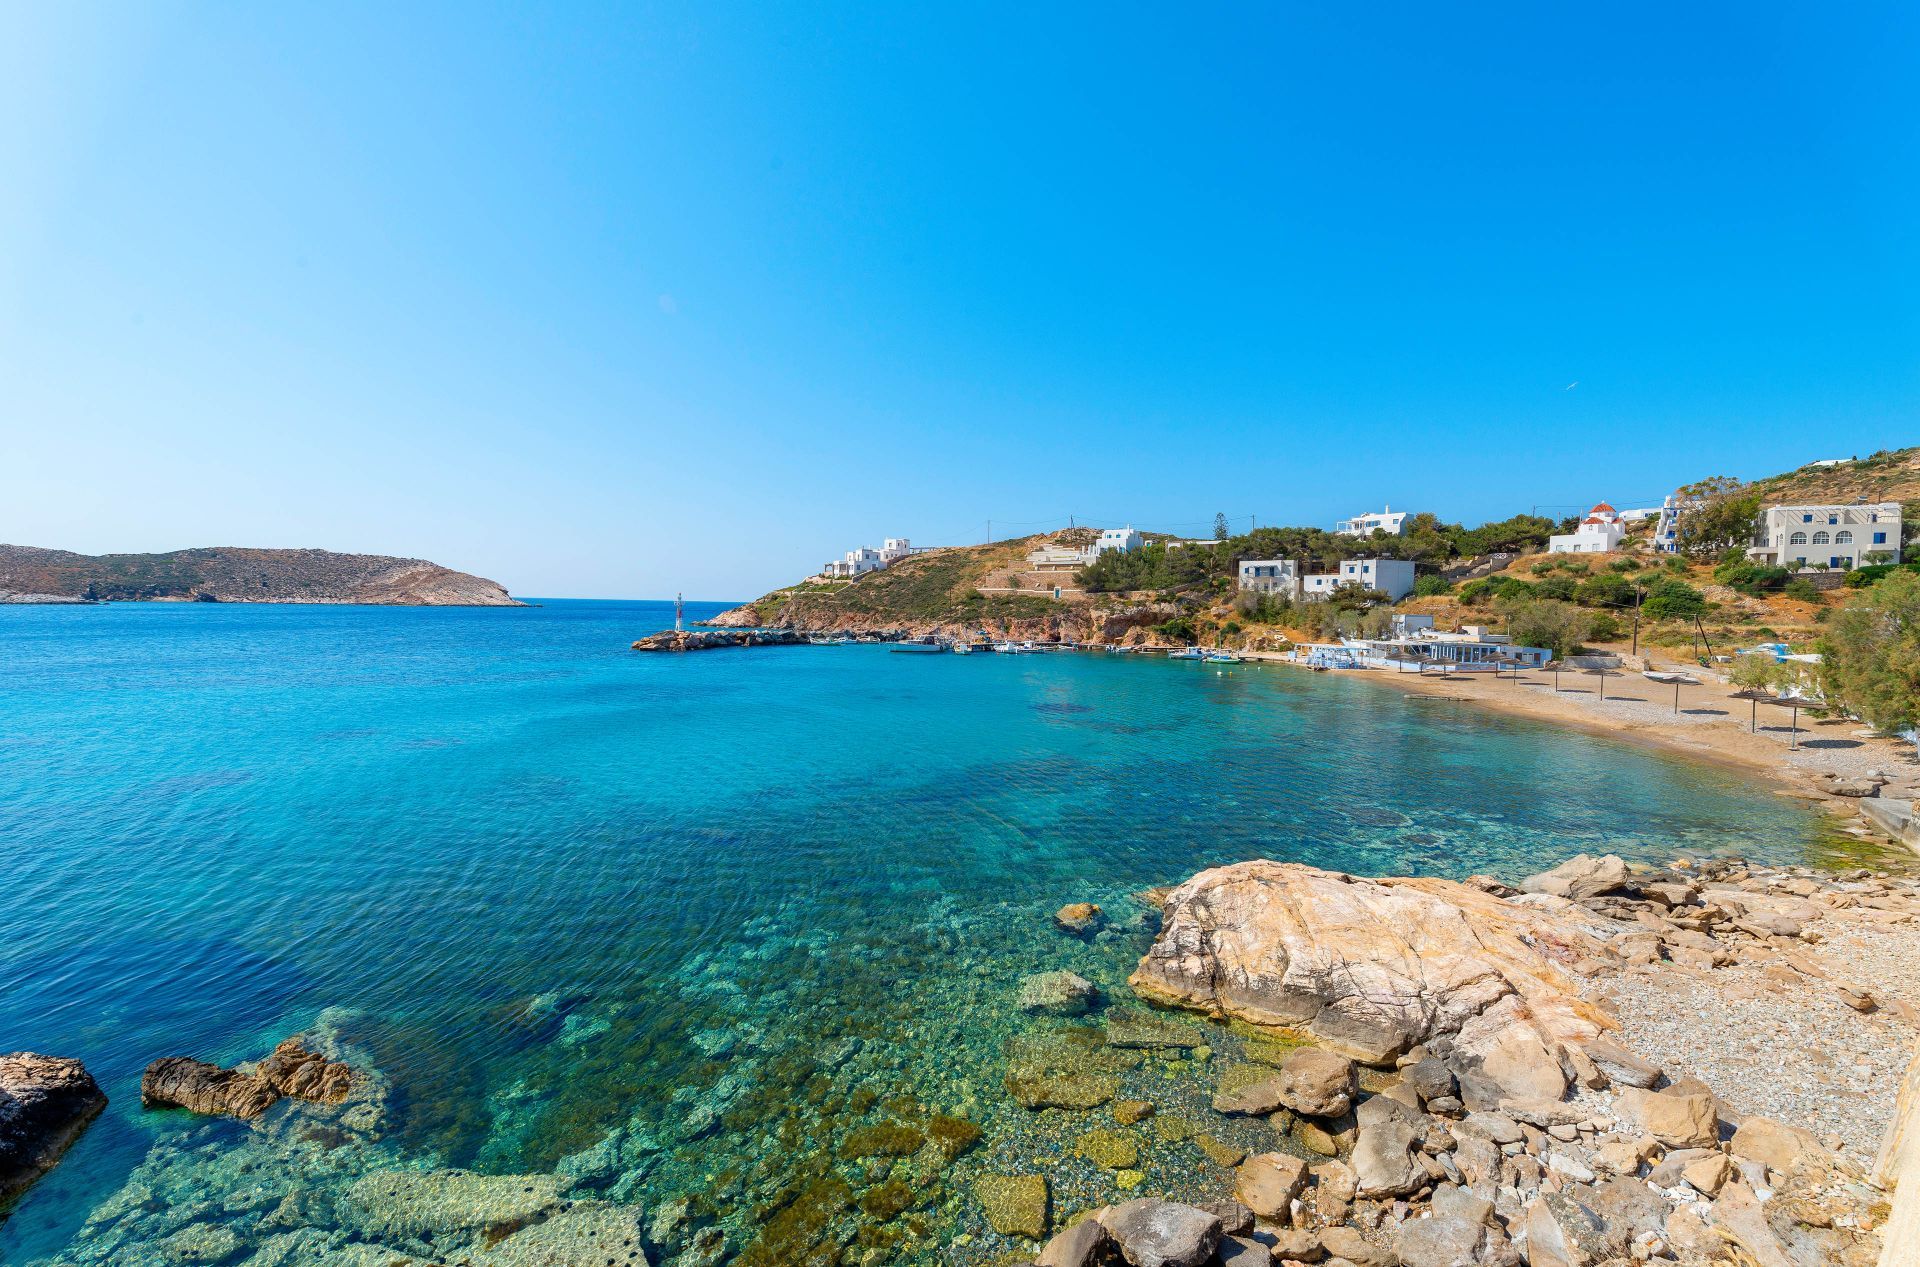 Syros island: Beaches